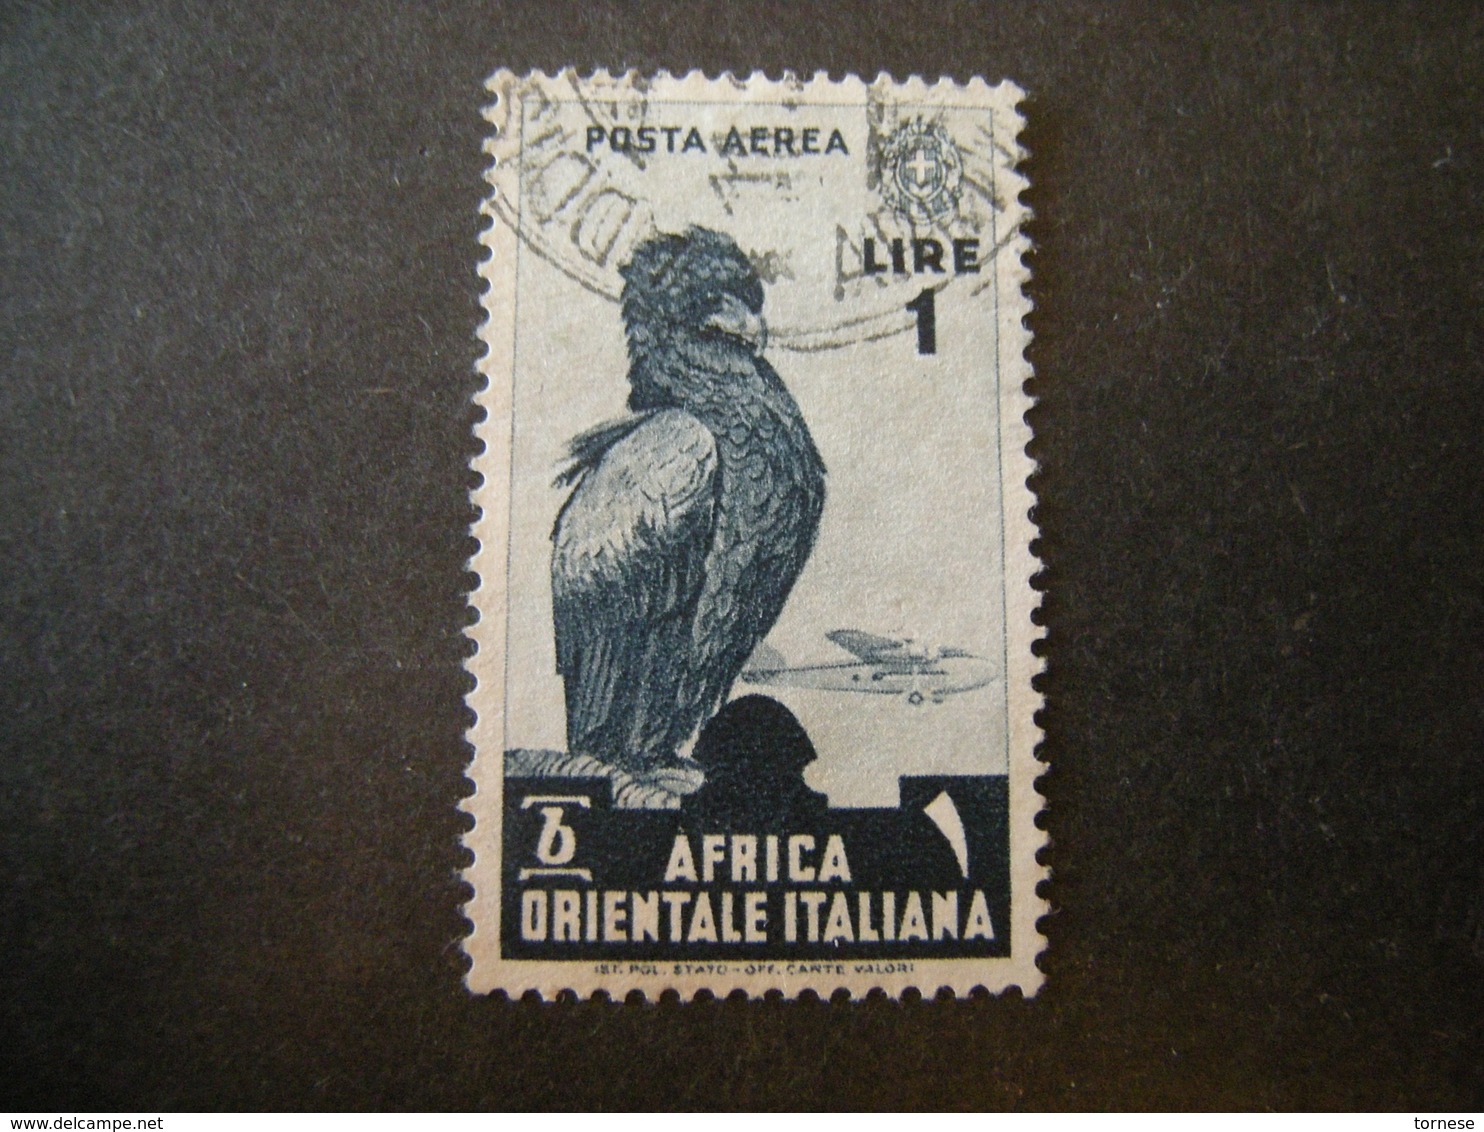 AFRICA ORIENT. ITALIANA - 1938, Posta Aerea, Sass N. A5, Lire 1, Usato - Italienisch Ost-Afrika